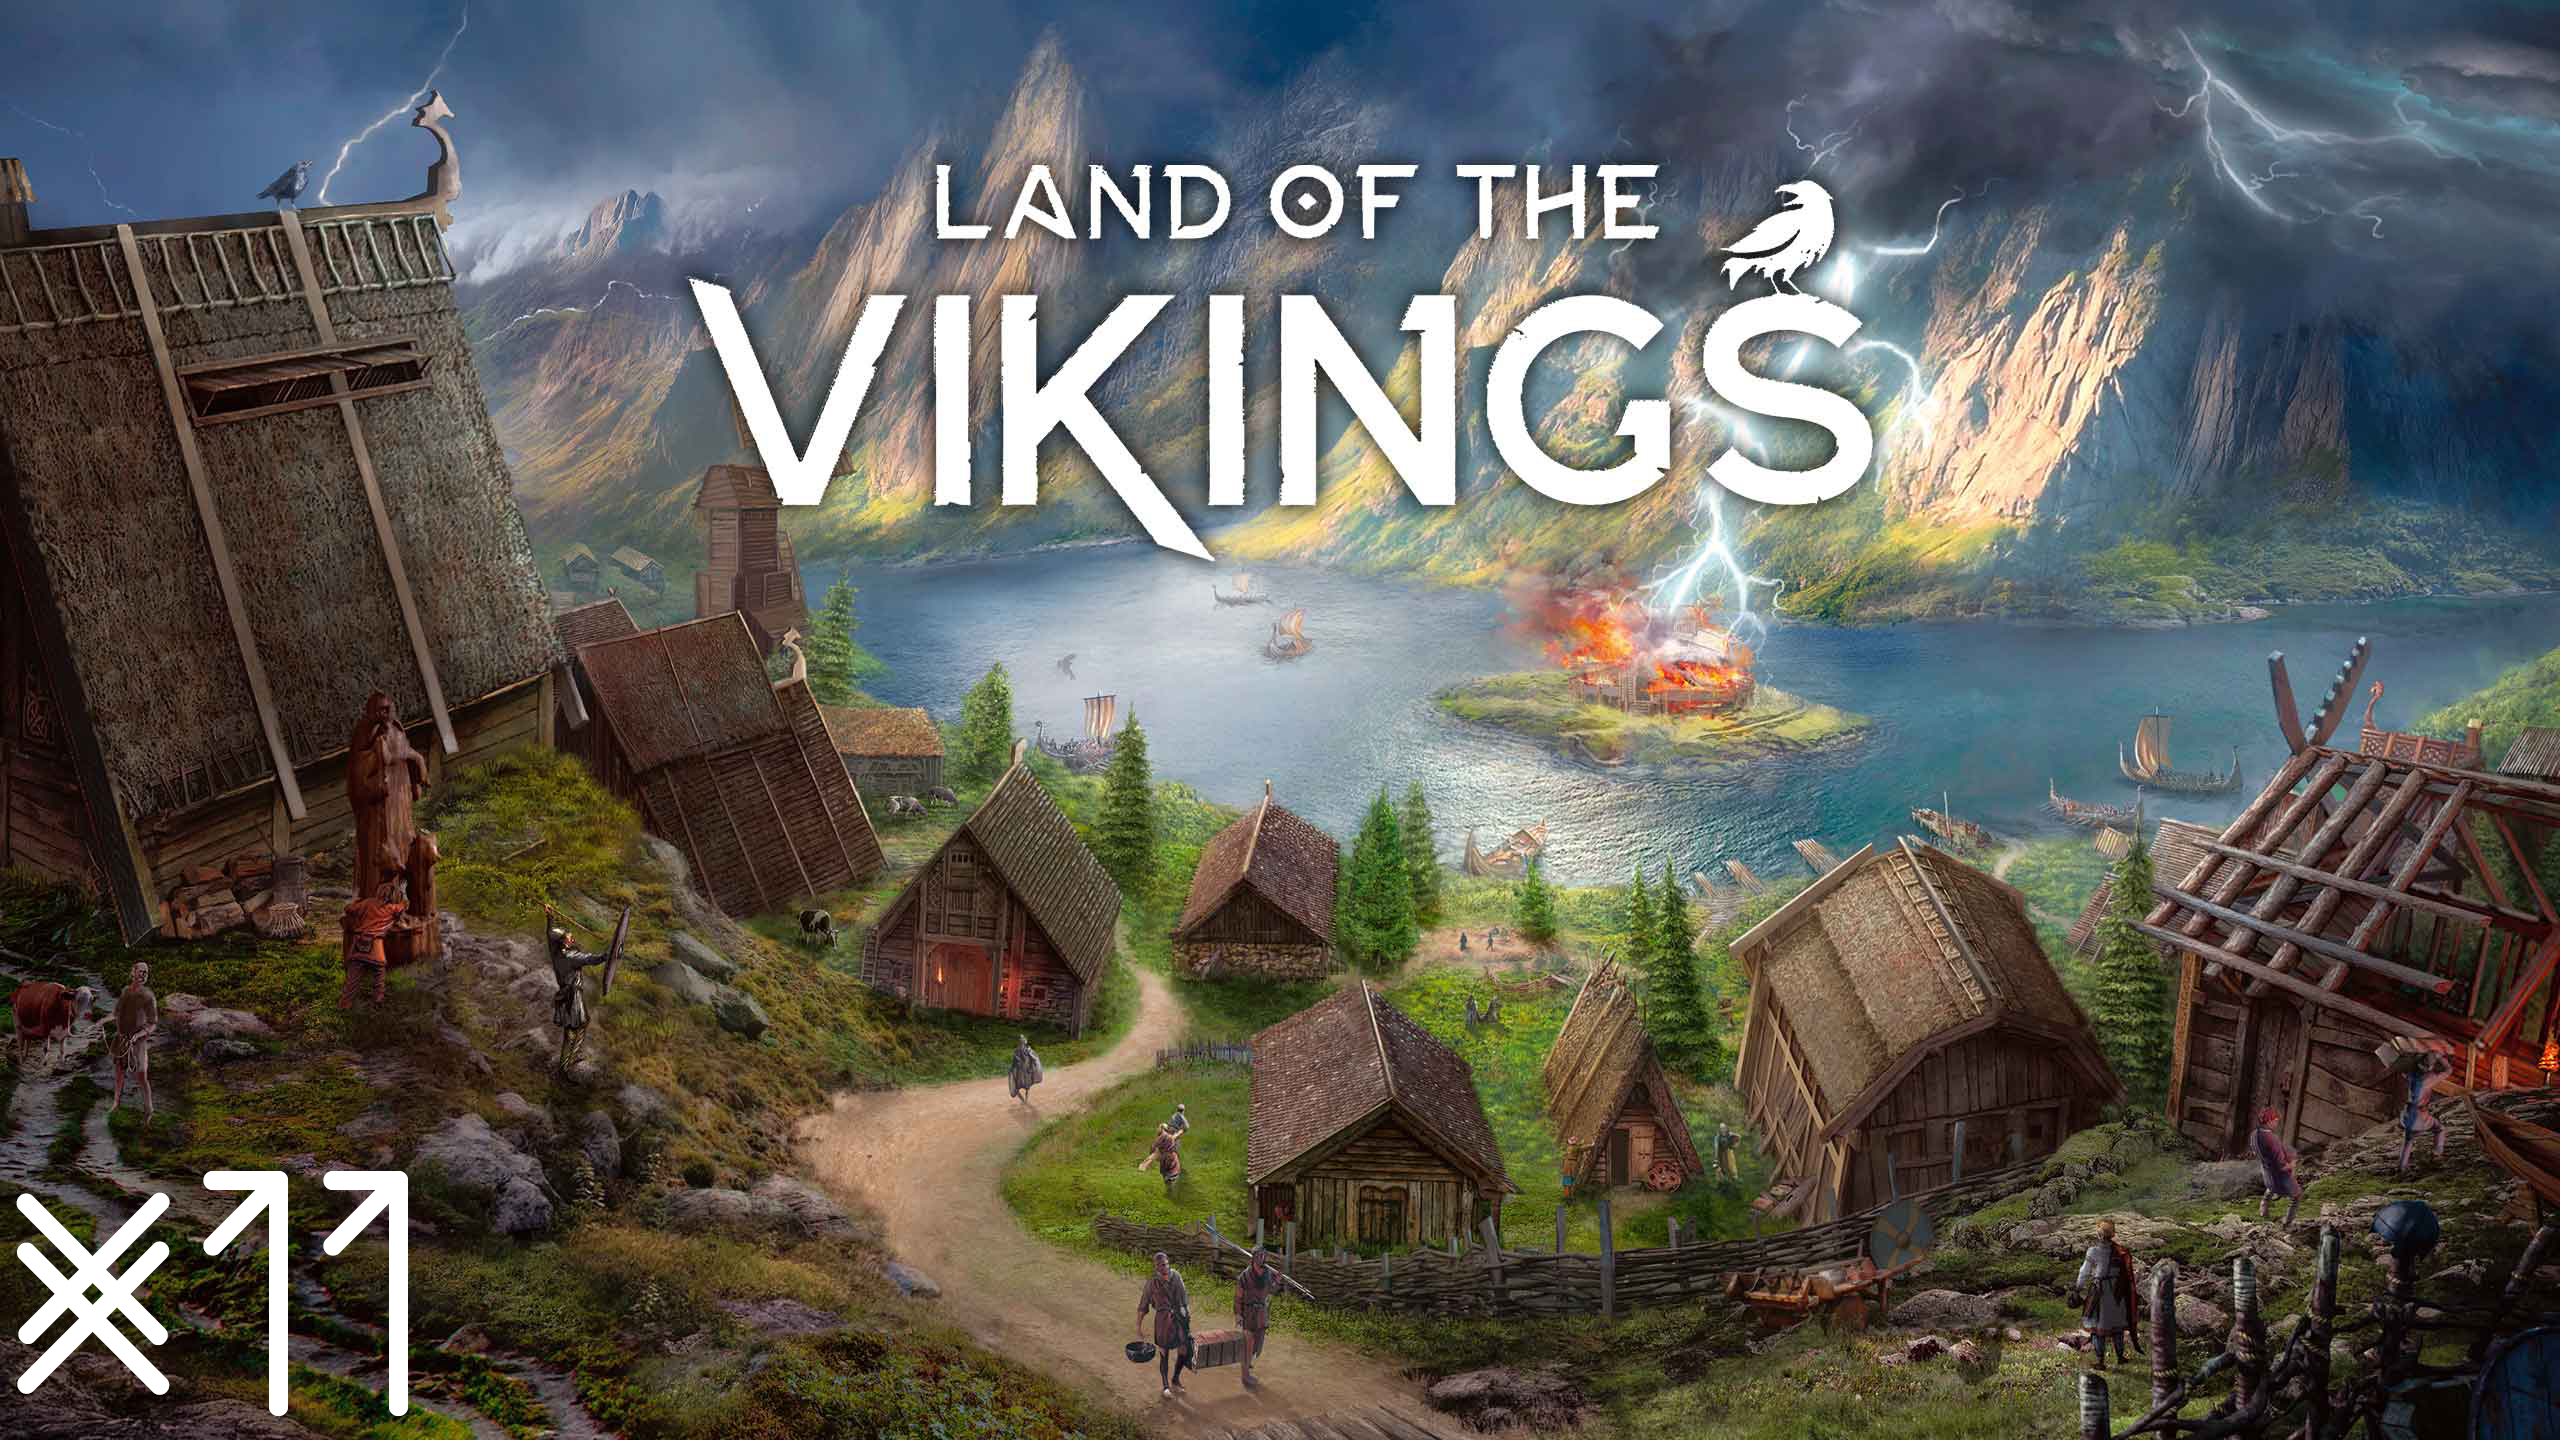 Первый набег. Воруй, убивай, бери гусей! Land of the Vikings #11